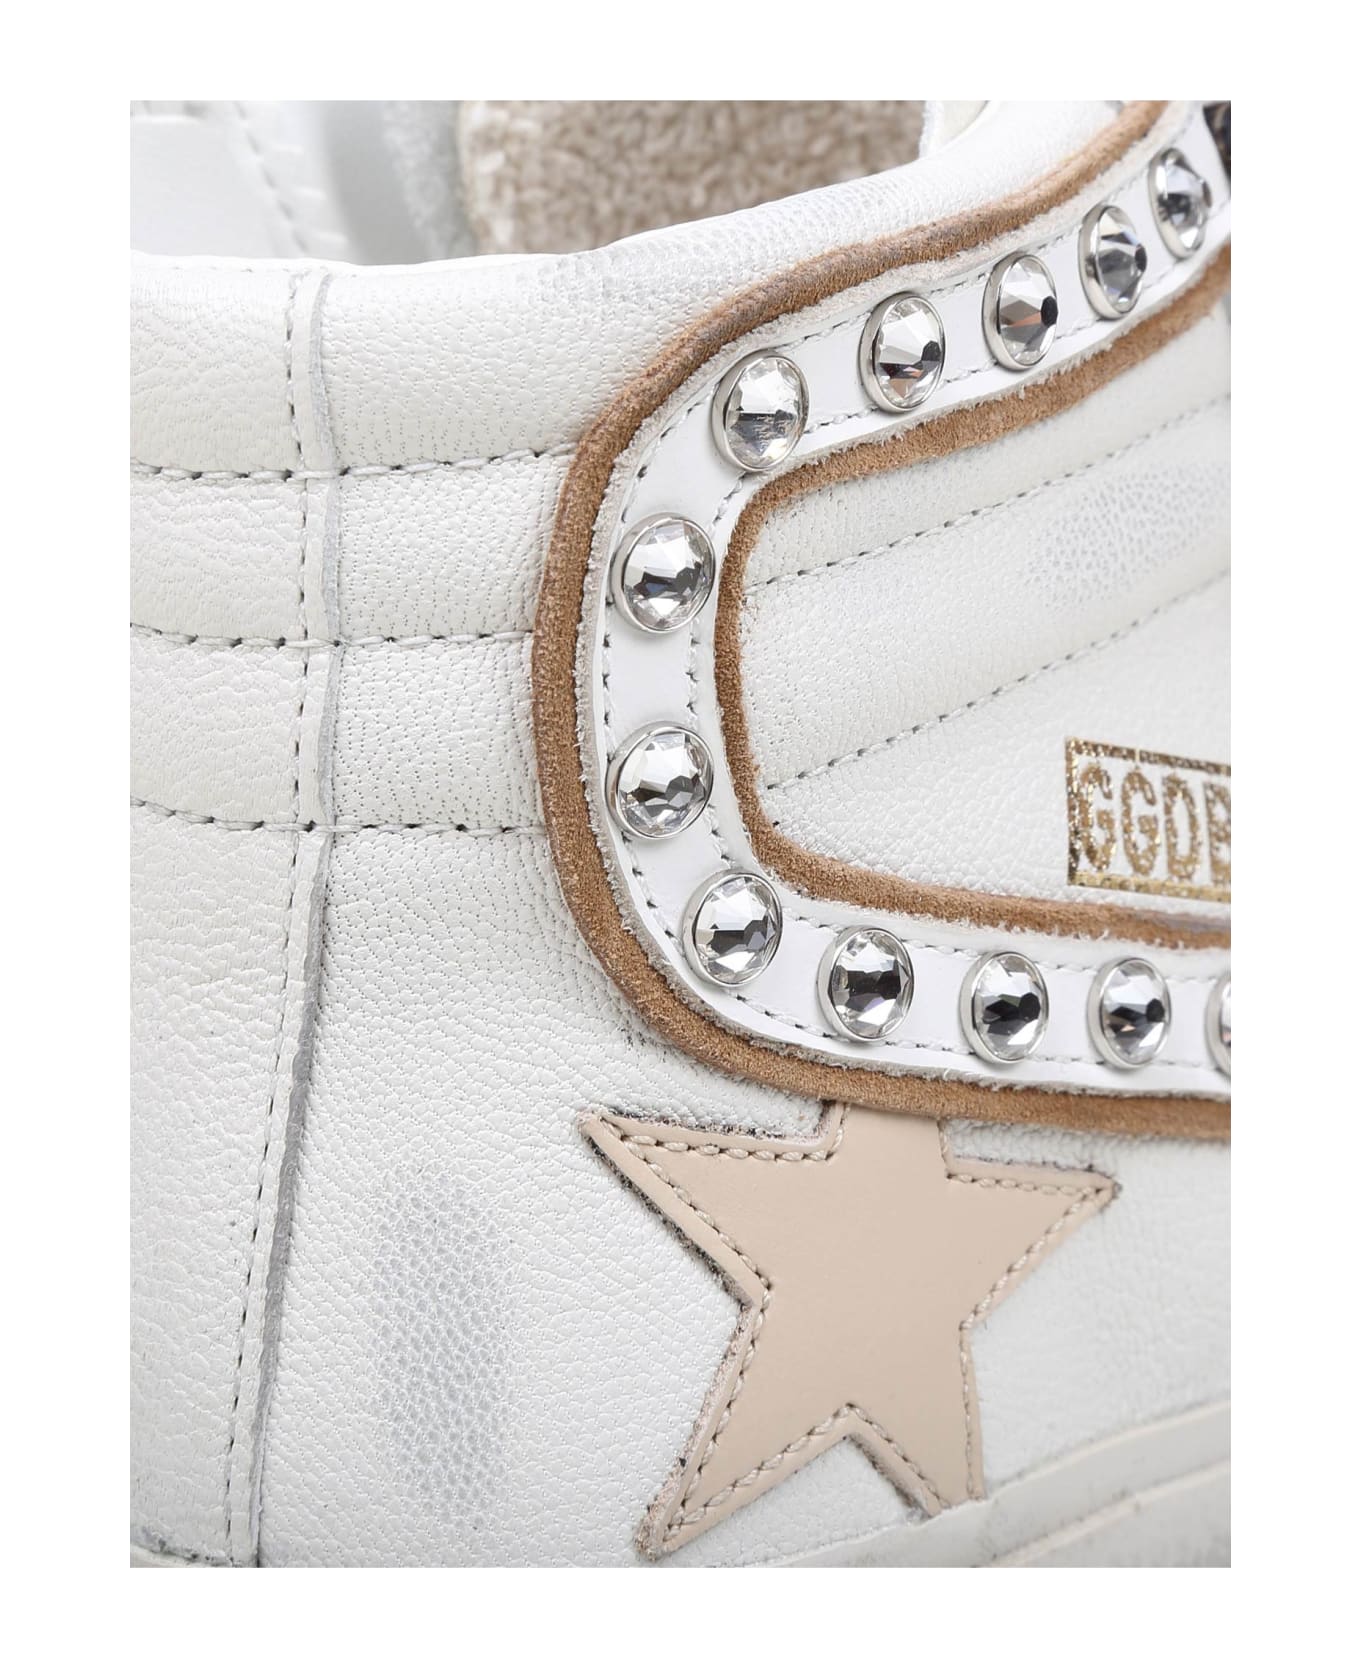 Golden Goose Slide Slide Penstar Sneakers In White Leather - White スニーカー